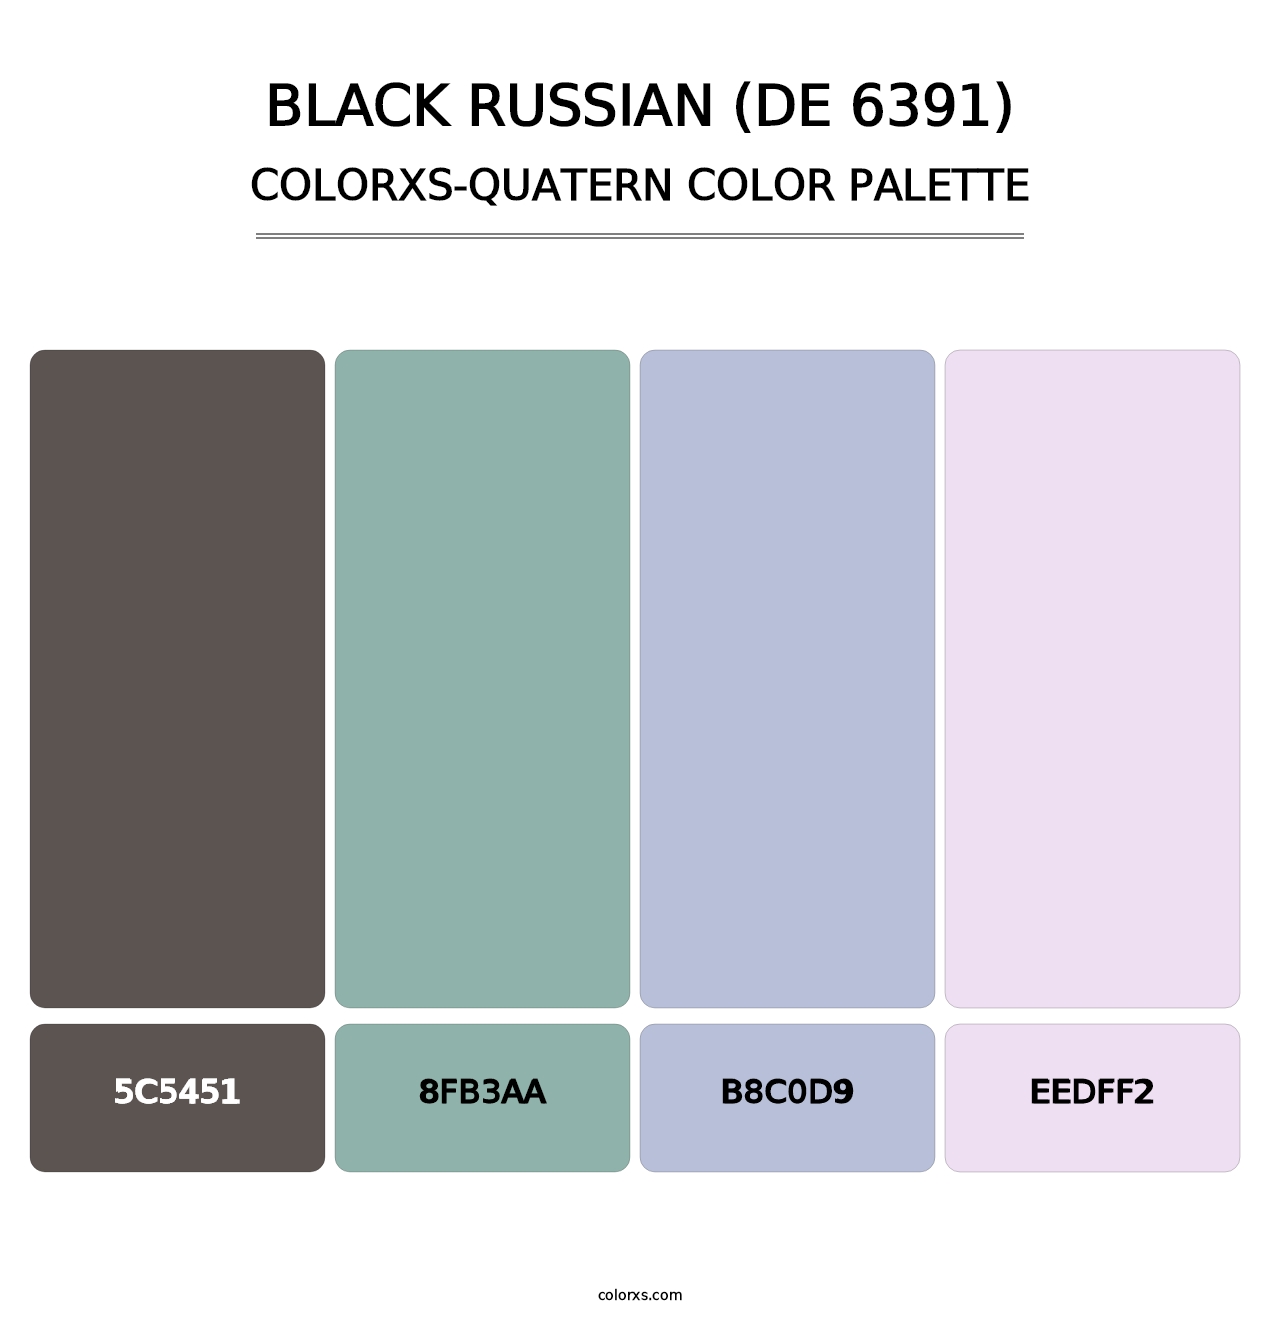 Black Russian (DE 6391) - Colorxs Quatern Palette